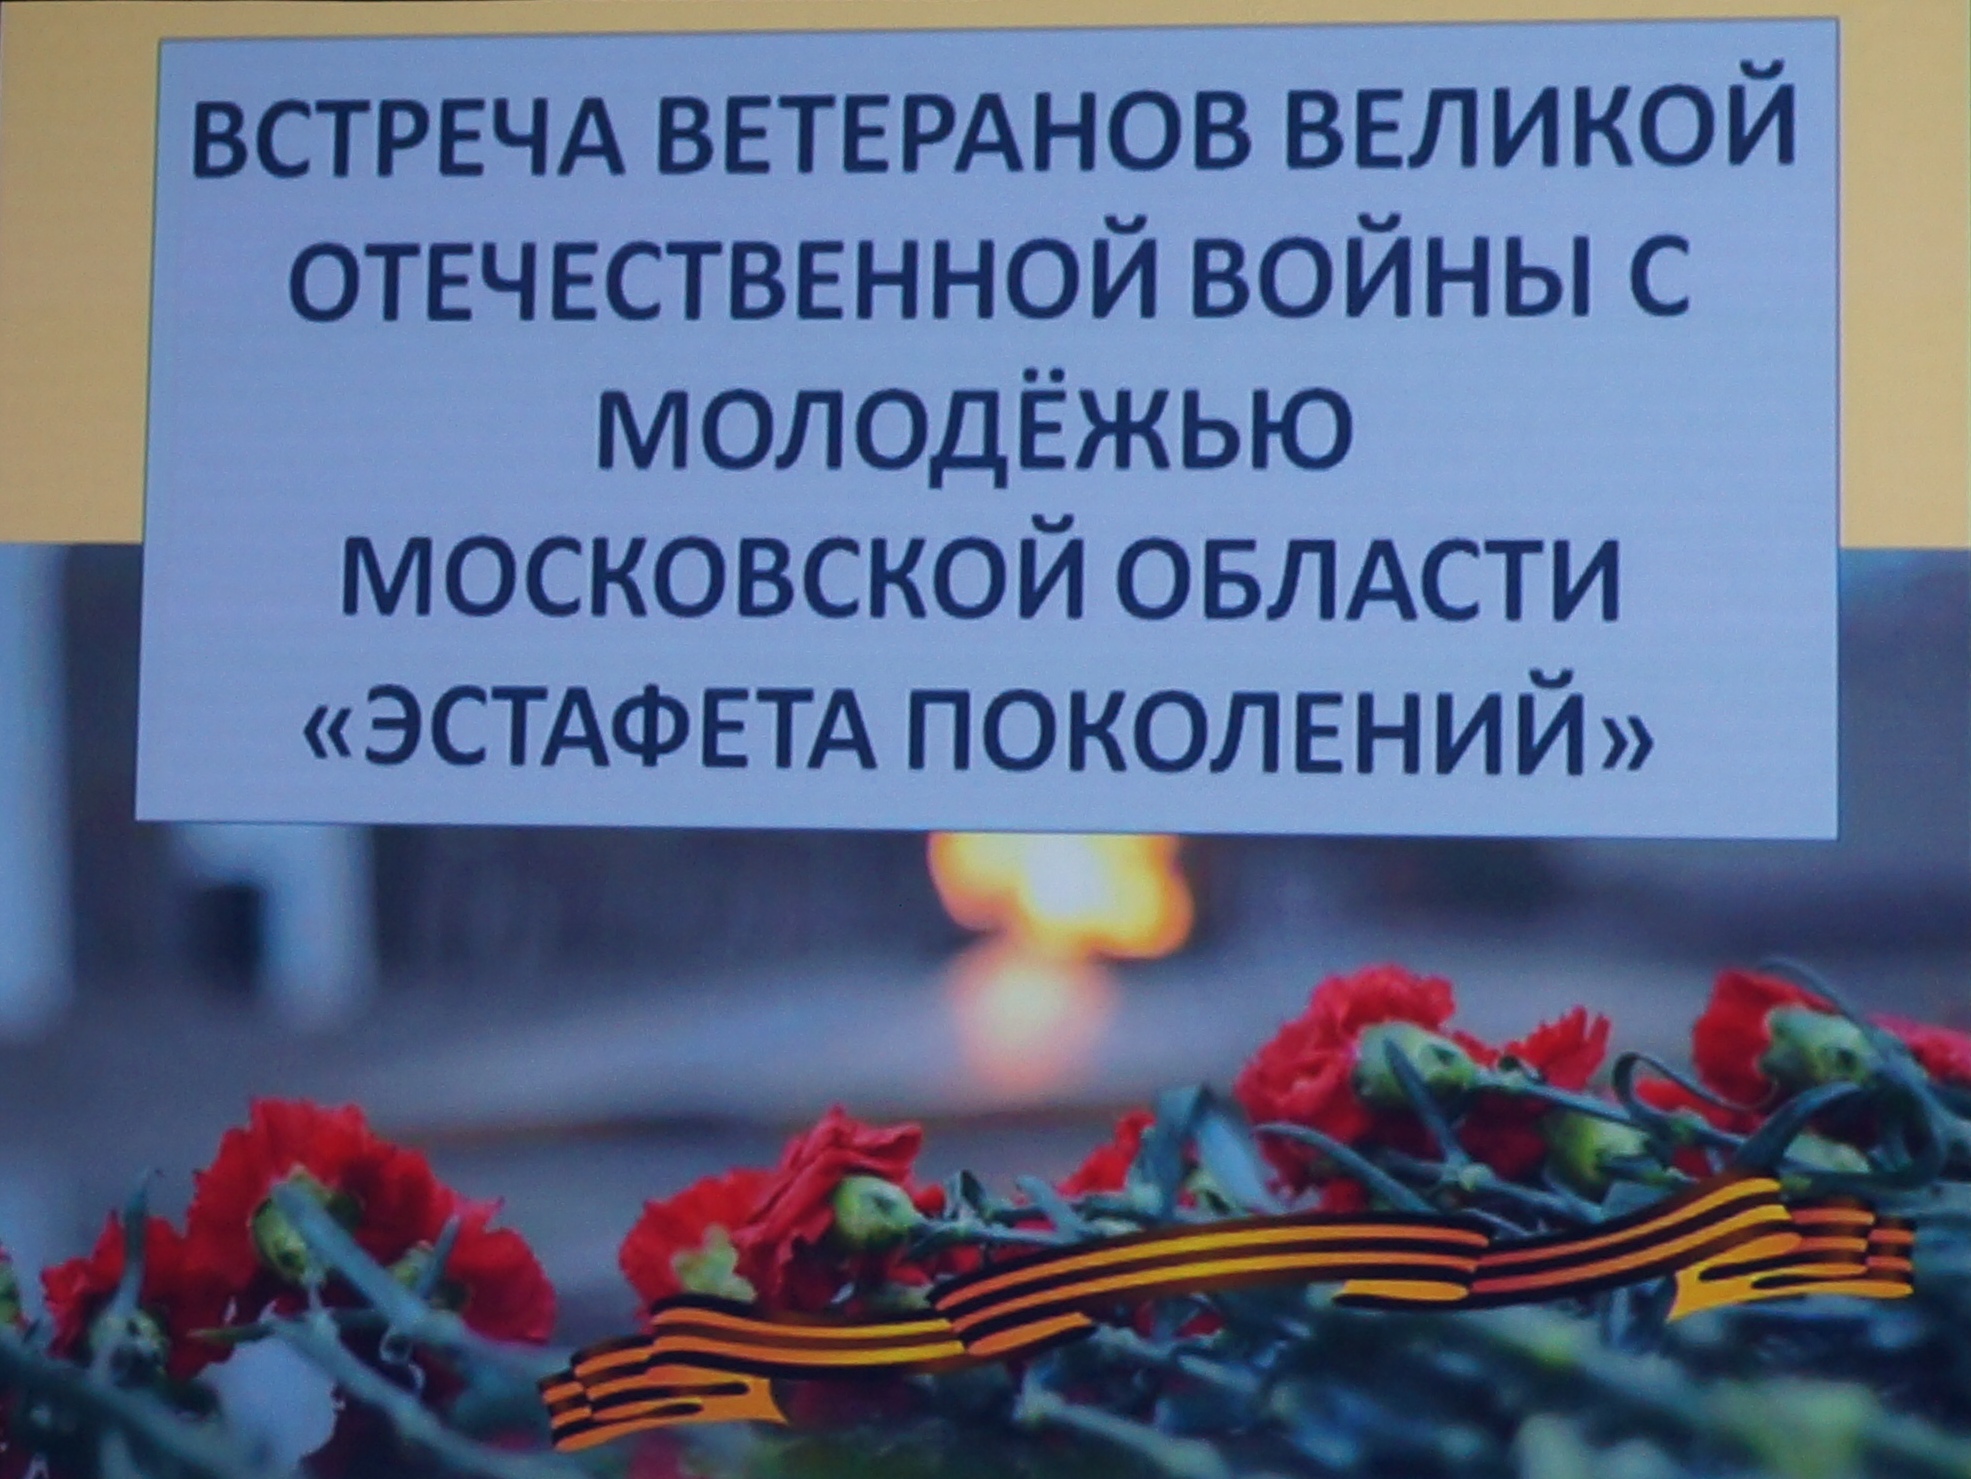 24 марта 2015 - Торжественная встреча Ветеранов Великой Отечественное войны с молодежью Московской области «Эстафета поколений»